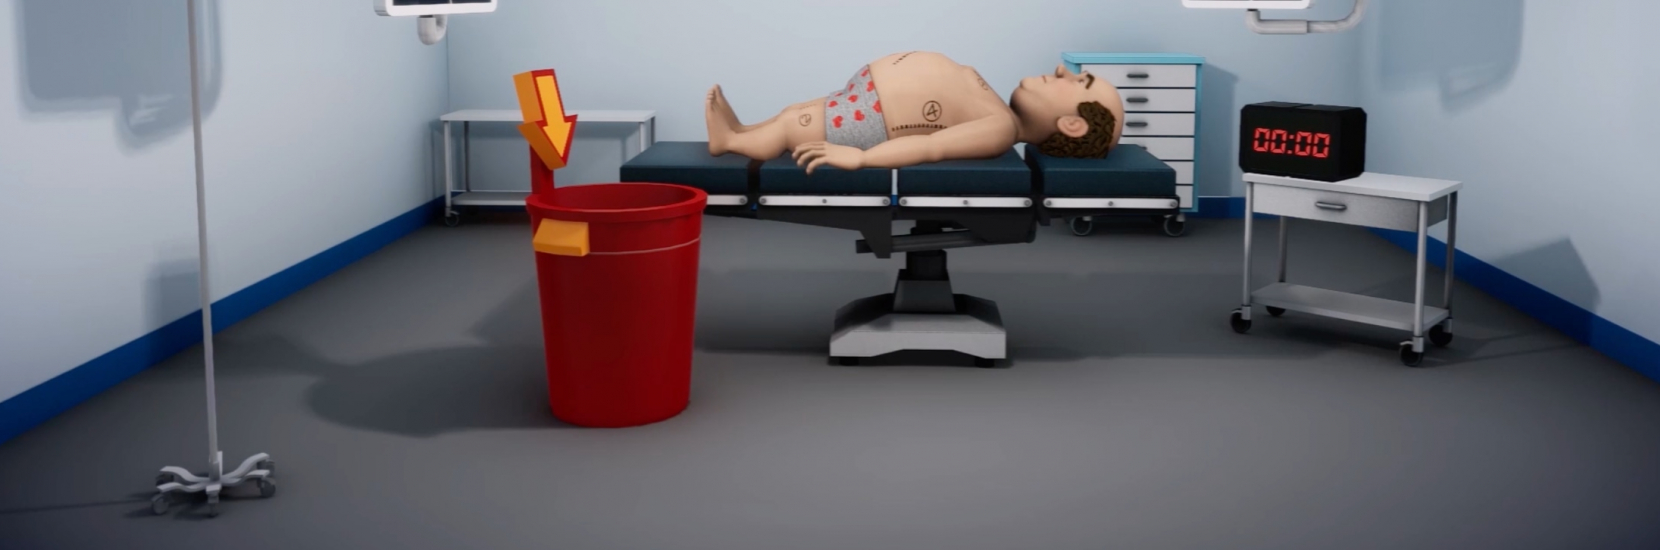 La réalité virtuelle fait son entrée à l'hôpital!